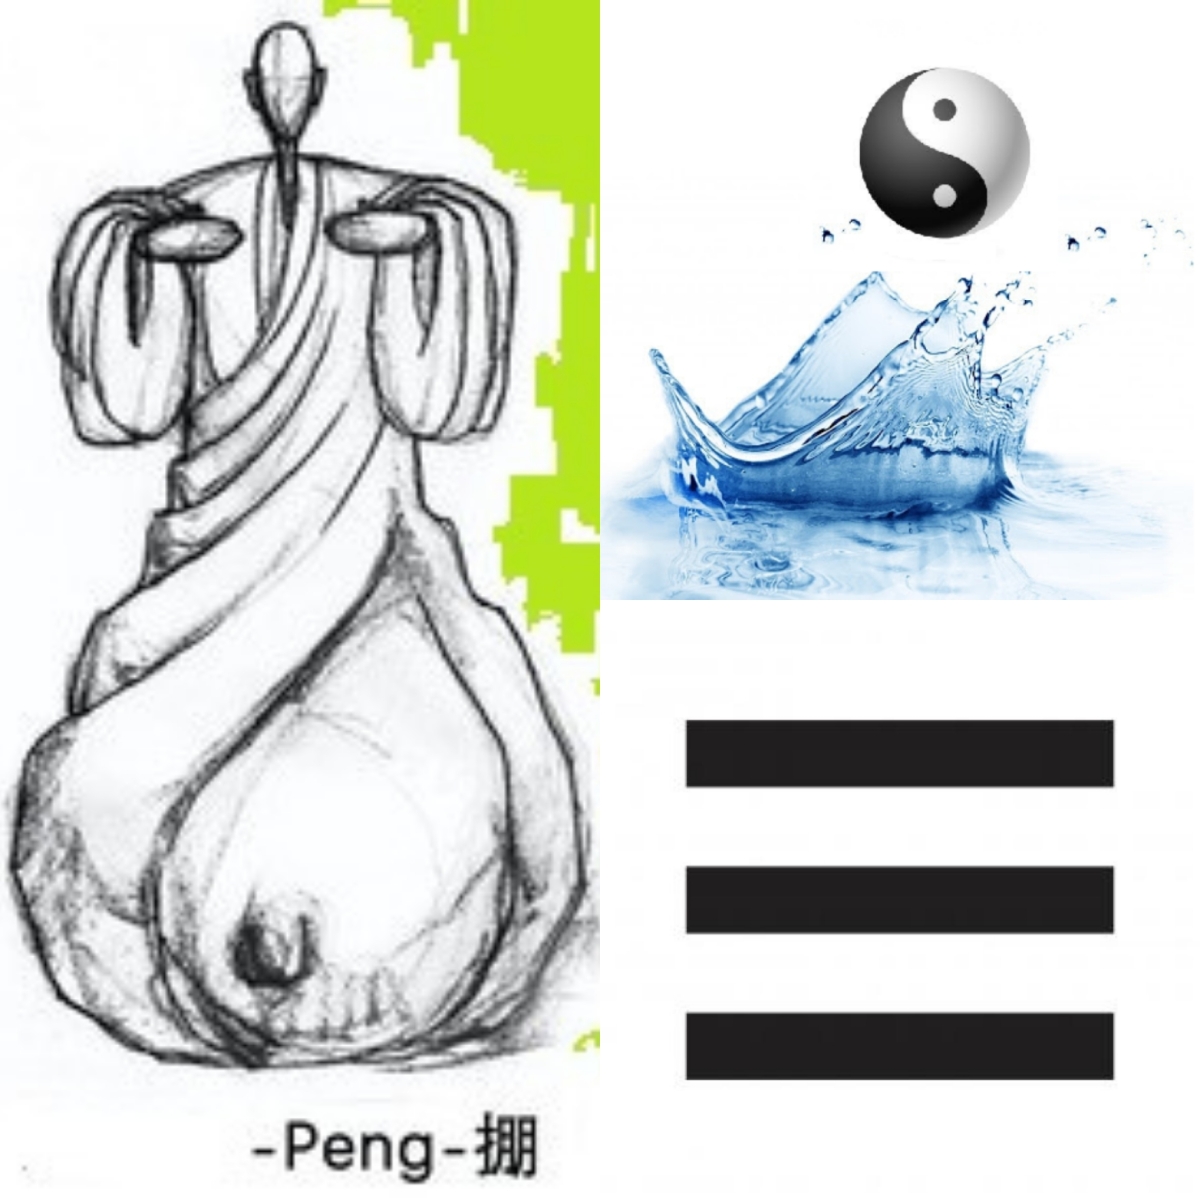 Las 4 manos principales – Peng